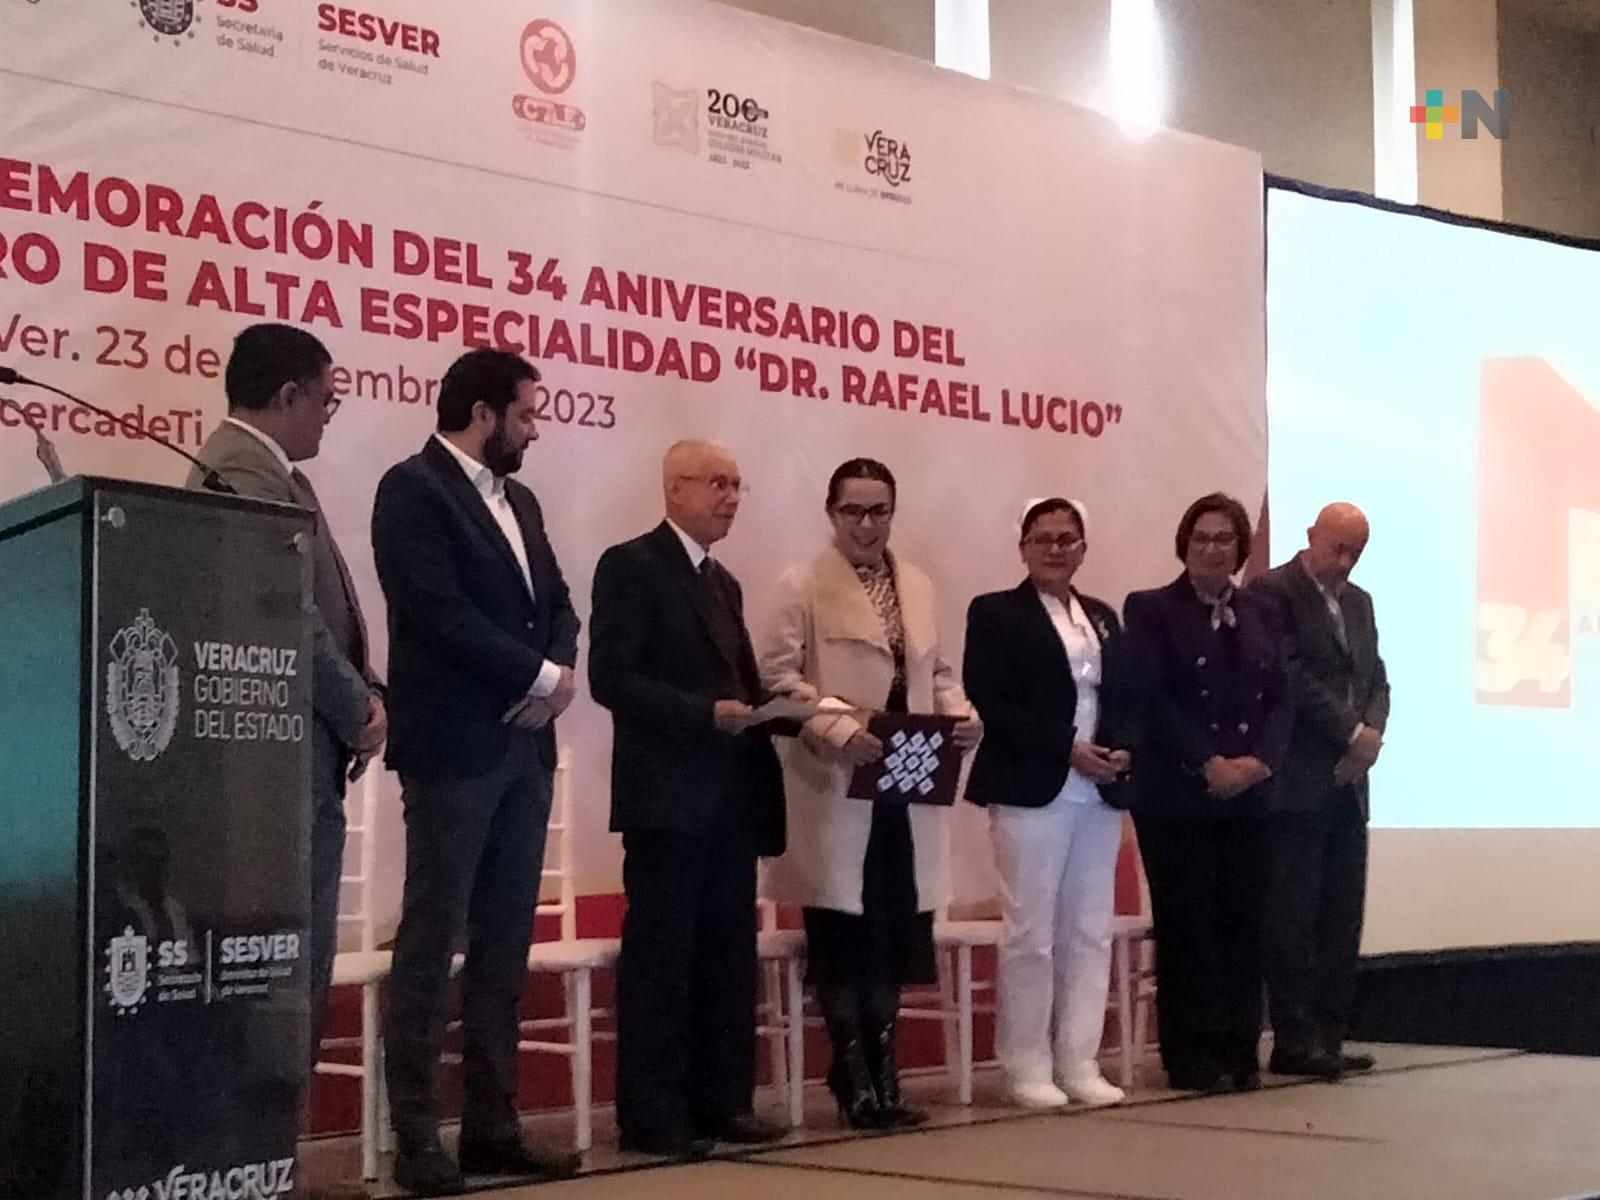 Celebran 34 aniversario del Centro de Alta Especialidad «Dr. Rafael Lucio»